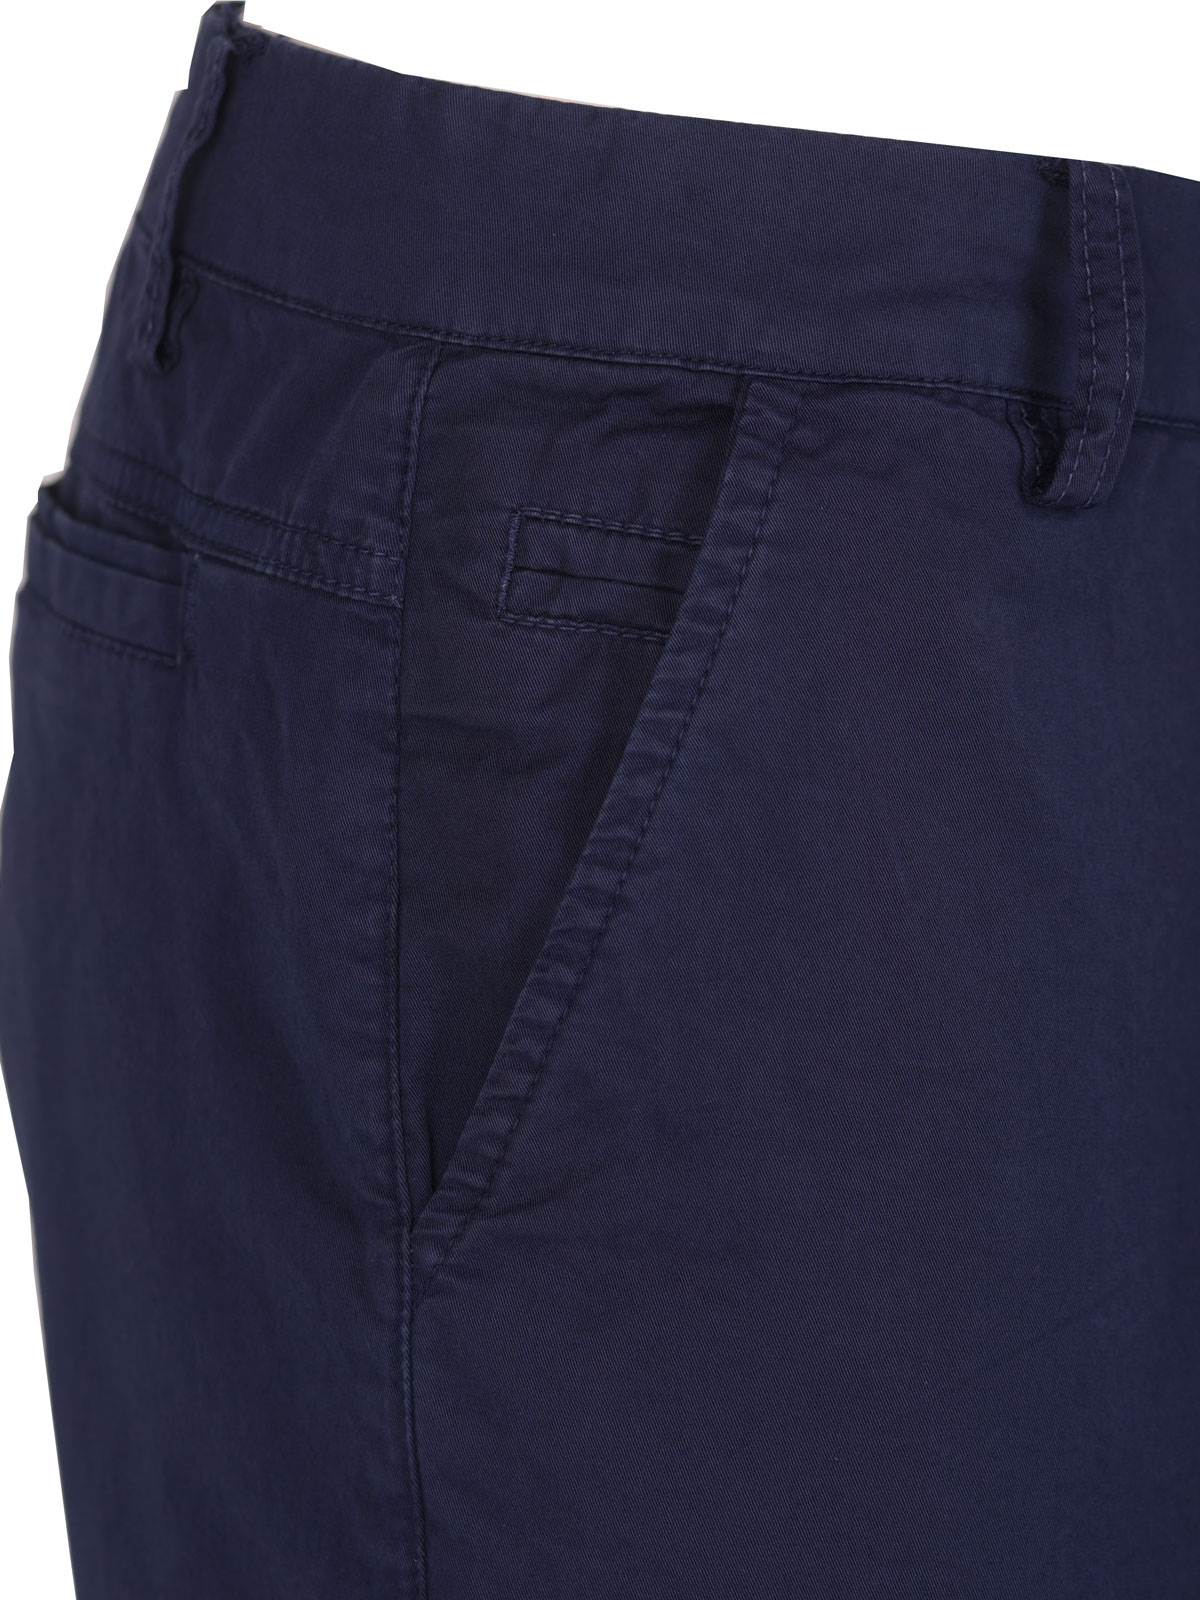 Κοντό παντελόνι σε μπλε χρώμα - 67091 € 43.87 img2